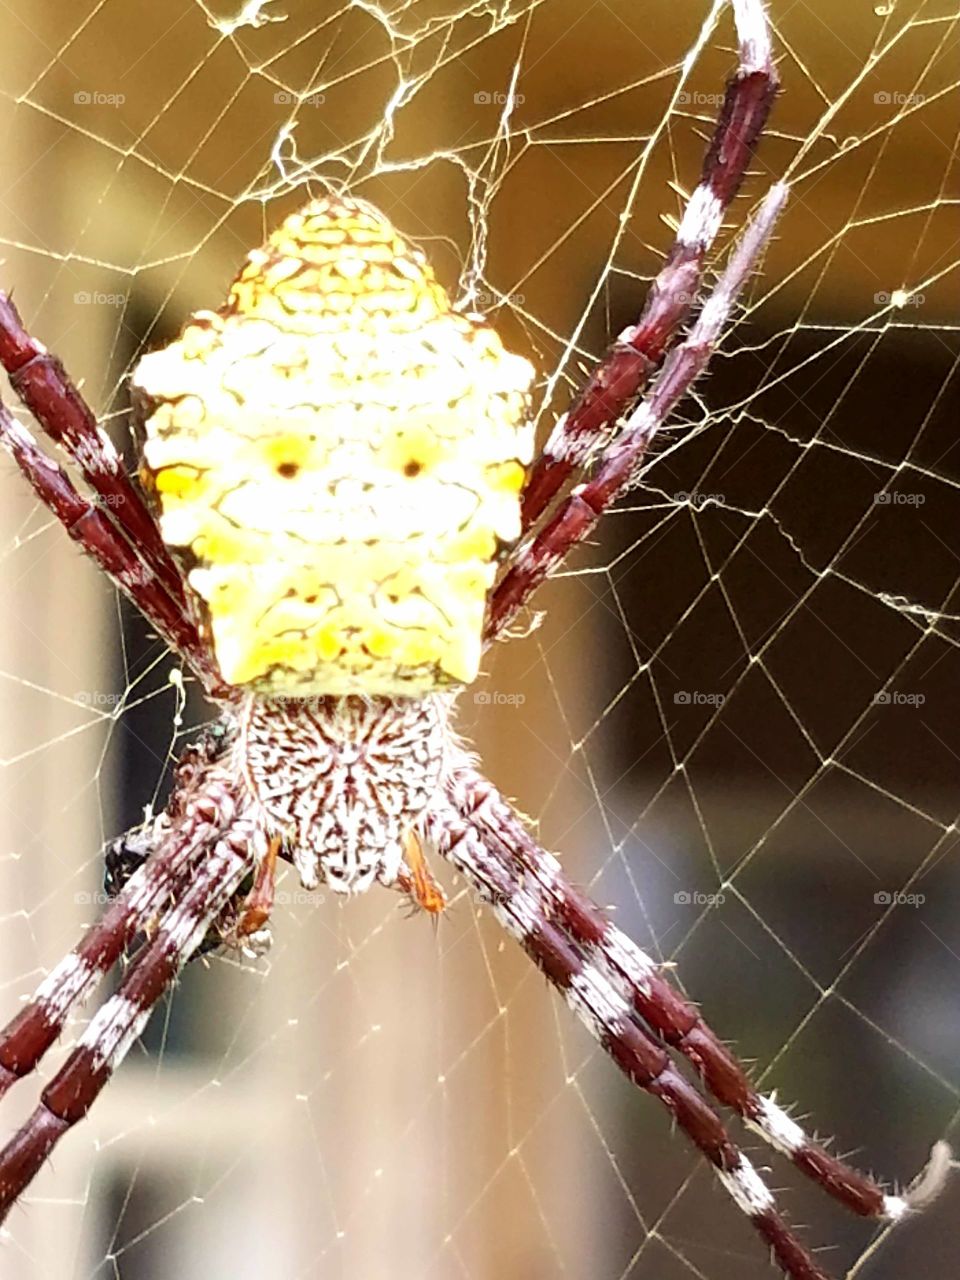 Spider, Trap, Web, Spiderweb, Nature